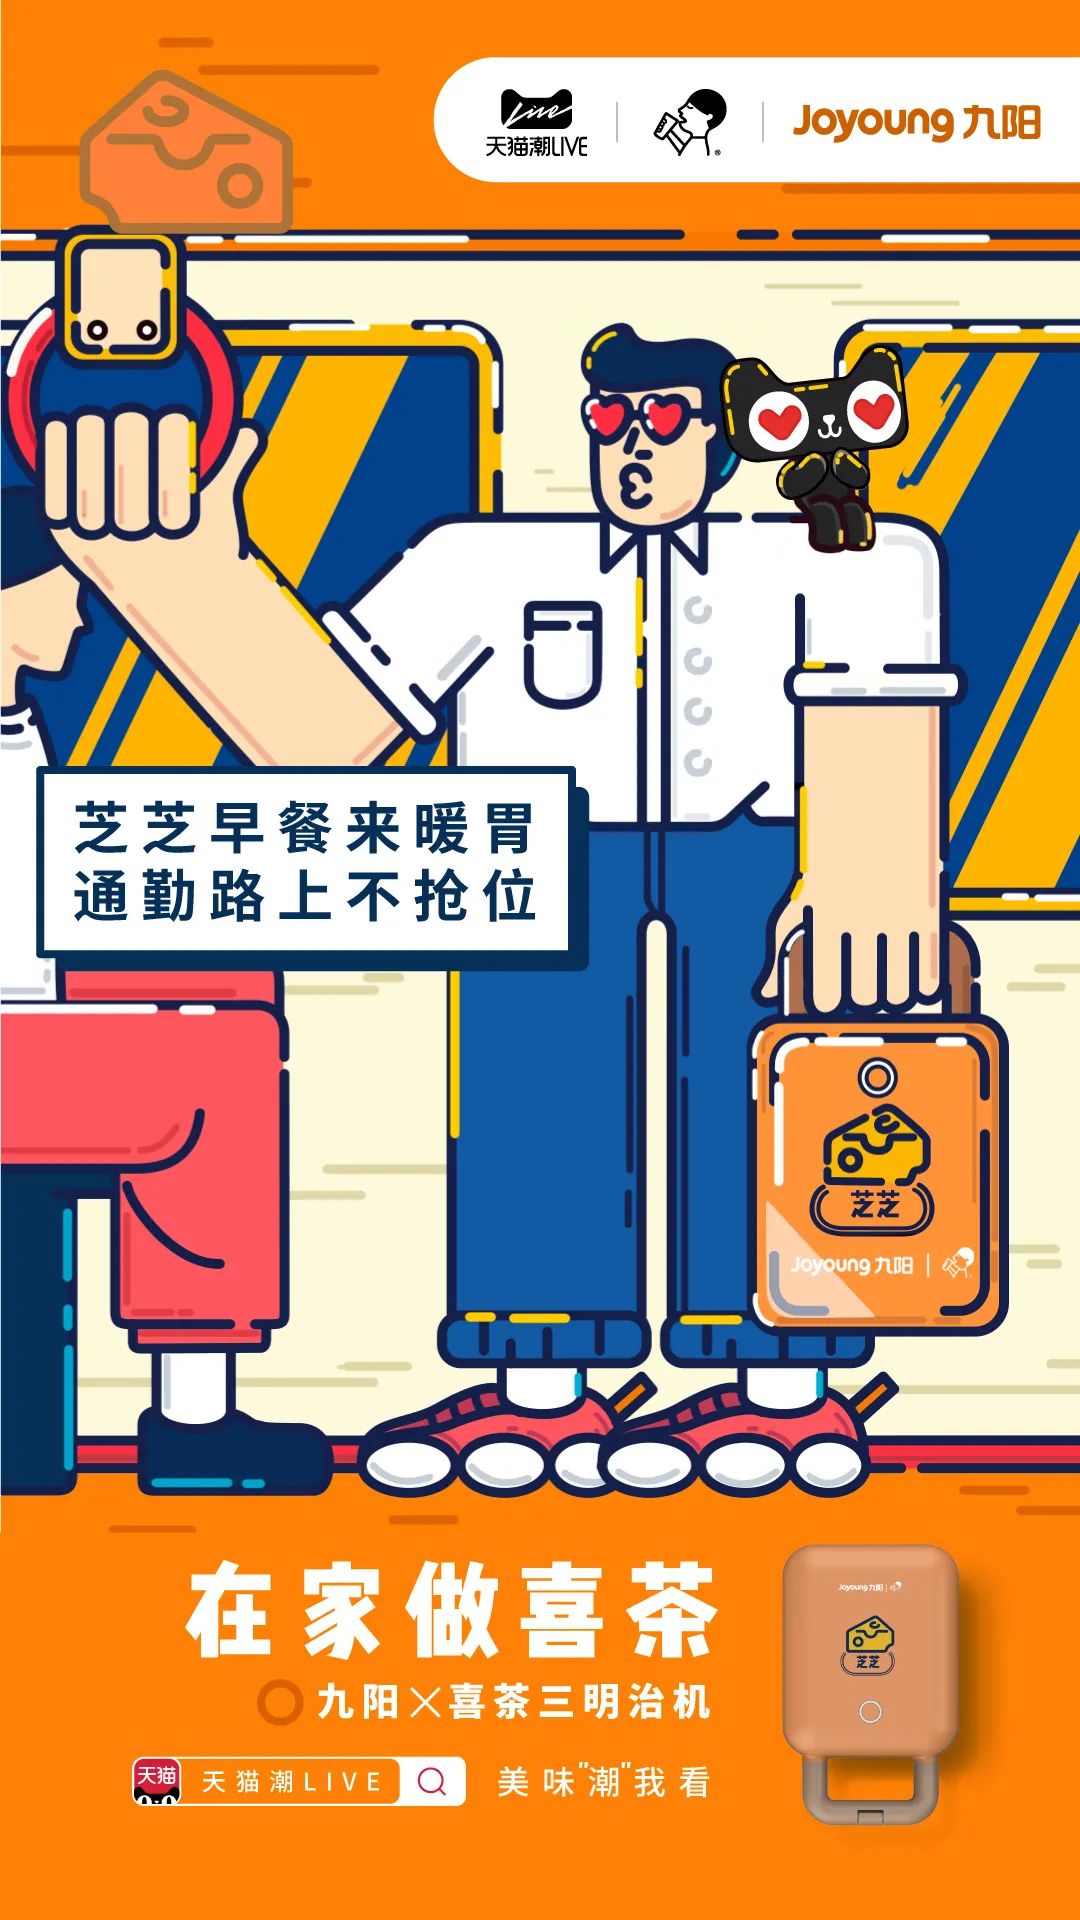 九阳喜茶联名合作品牌策划营销海报效果